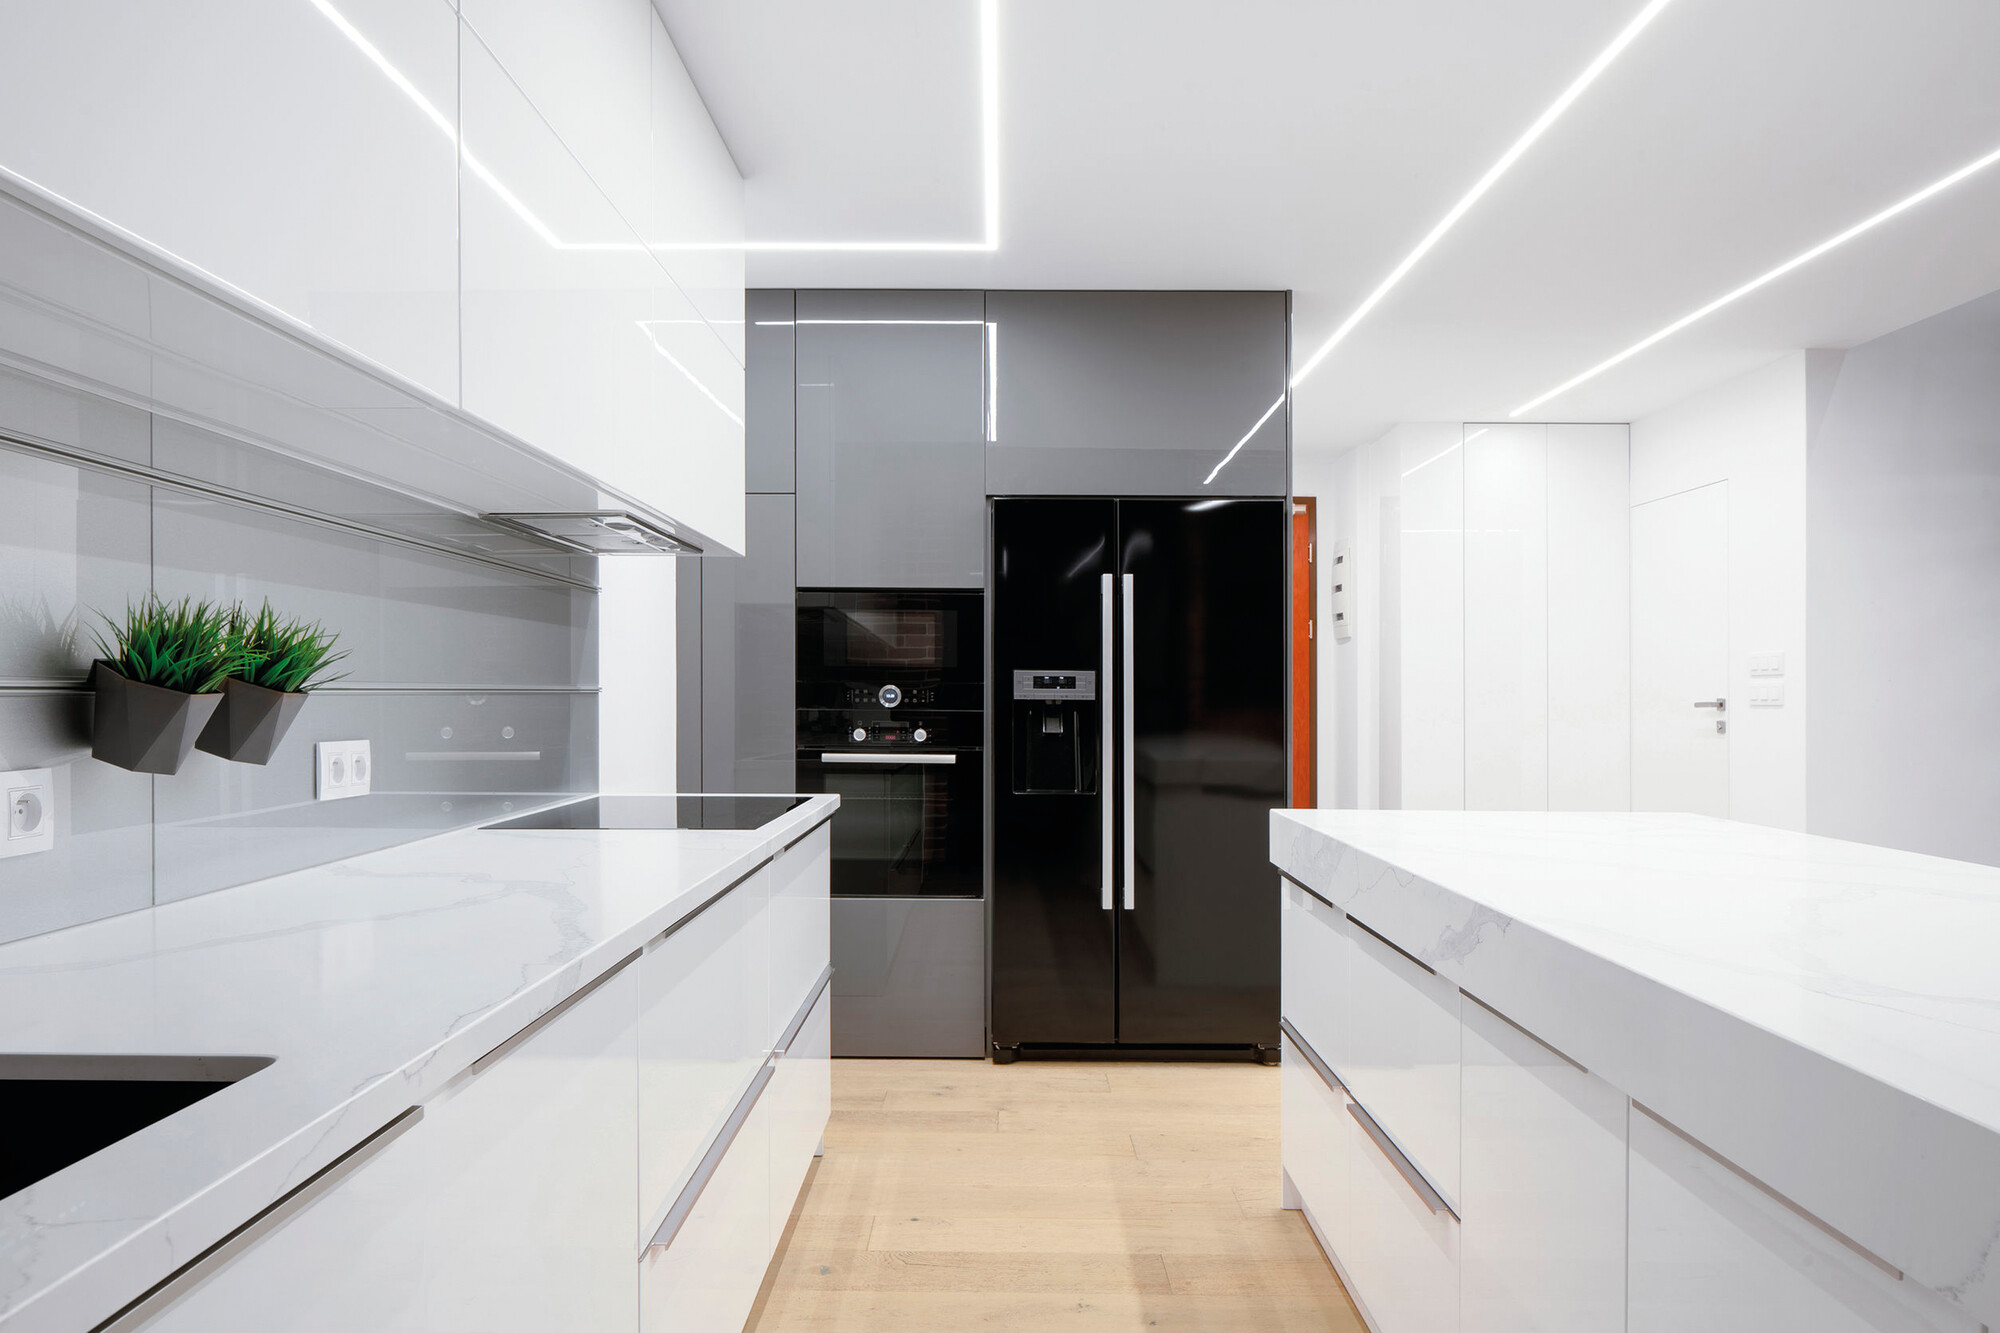 LEDy w kuchni: Jak oświetlenie może poprawić atmosferę i wydajność? - 4